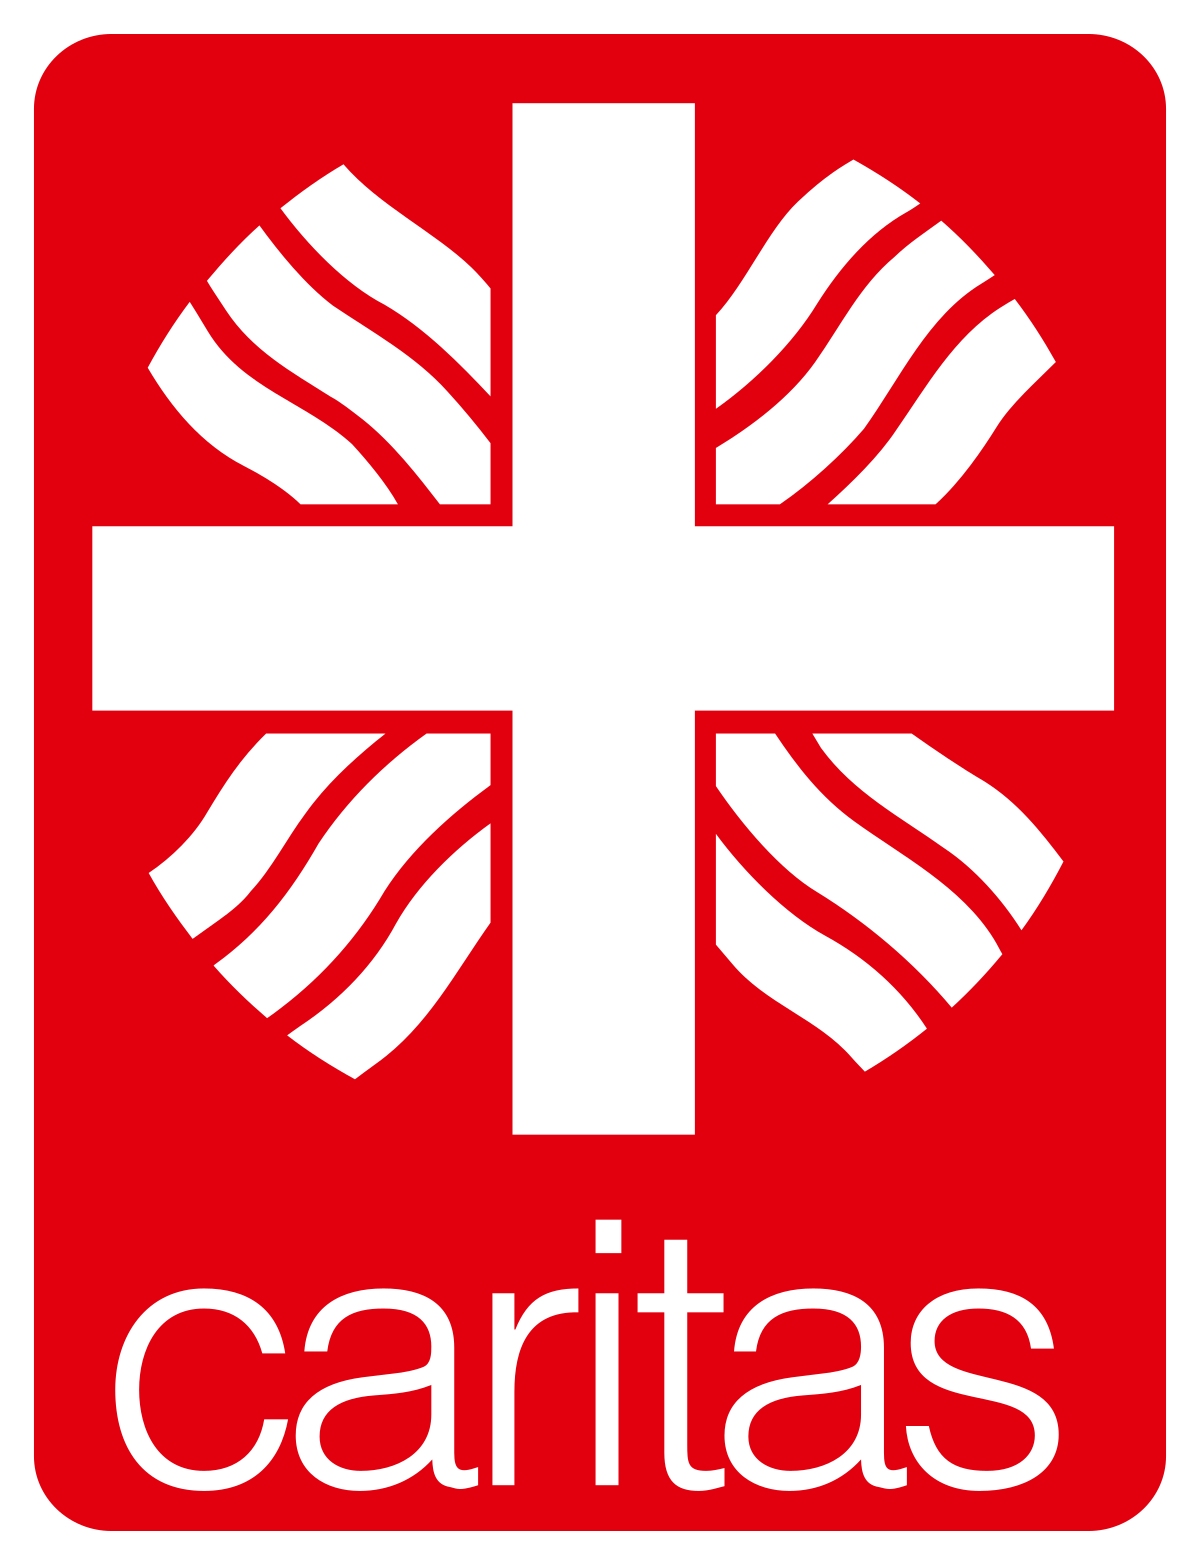 () (c) Caritas